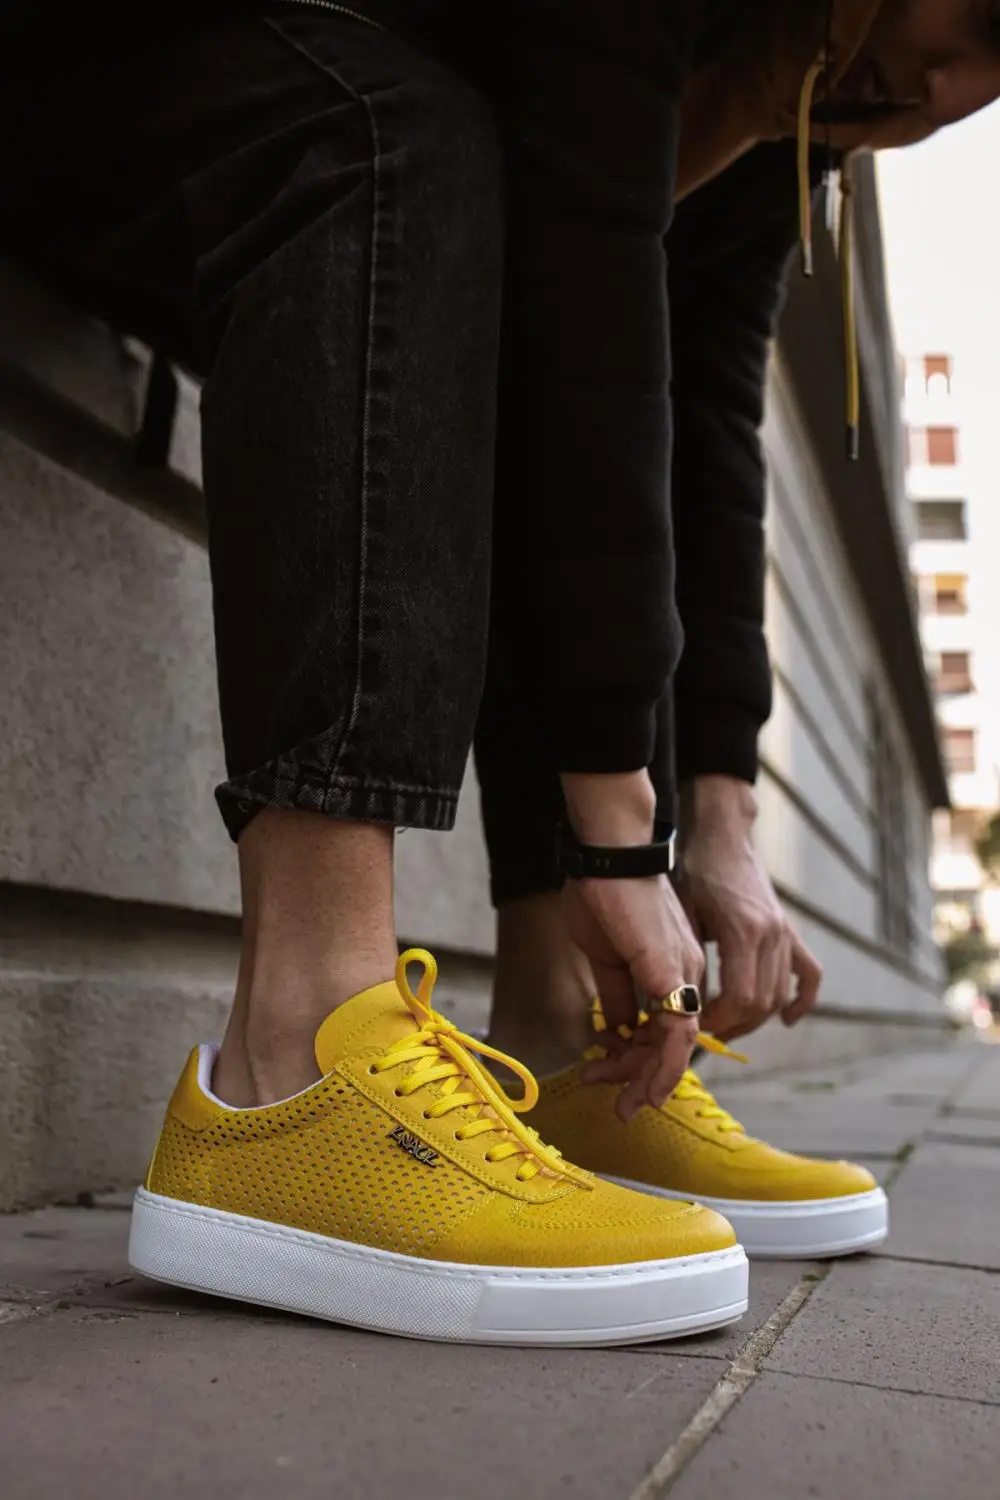 

Knack 011 Мужская обувь ортопедическая подошва на шнуровке стиль весна-осень модная желтая (не кожа) Повседневная широкая форма